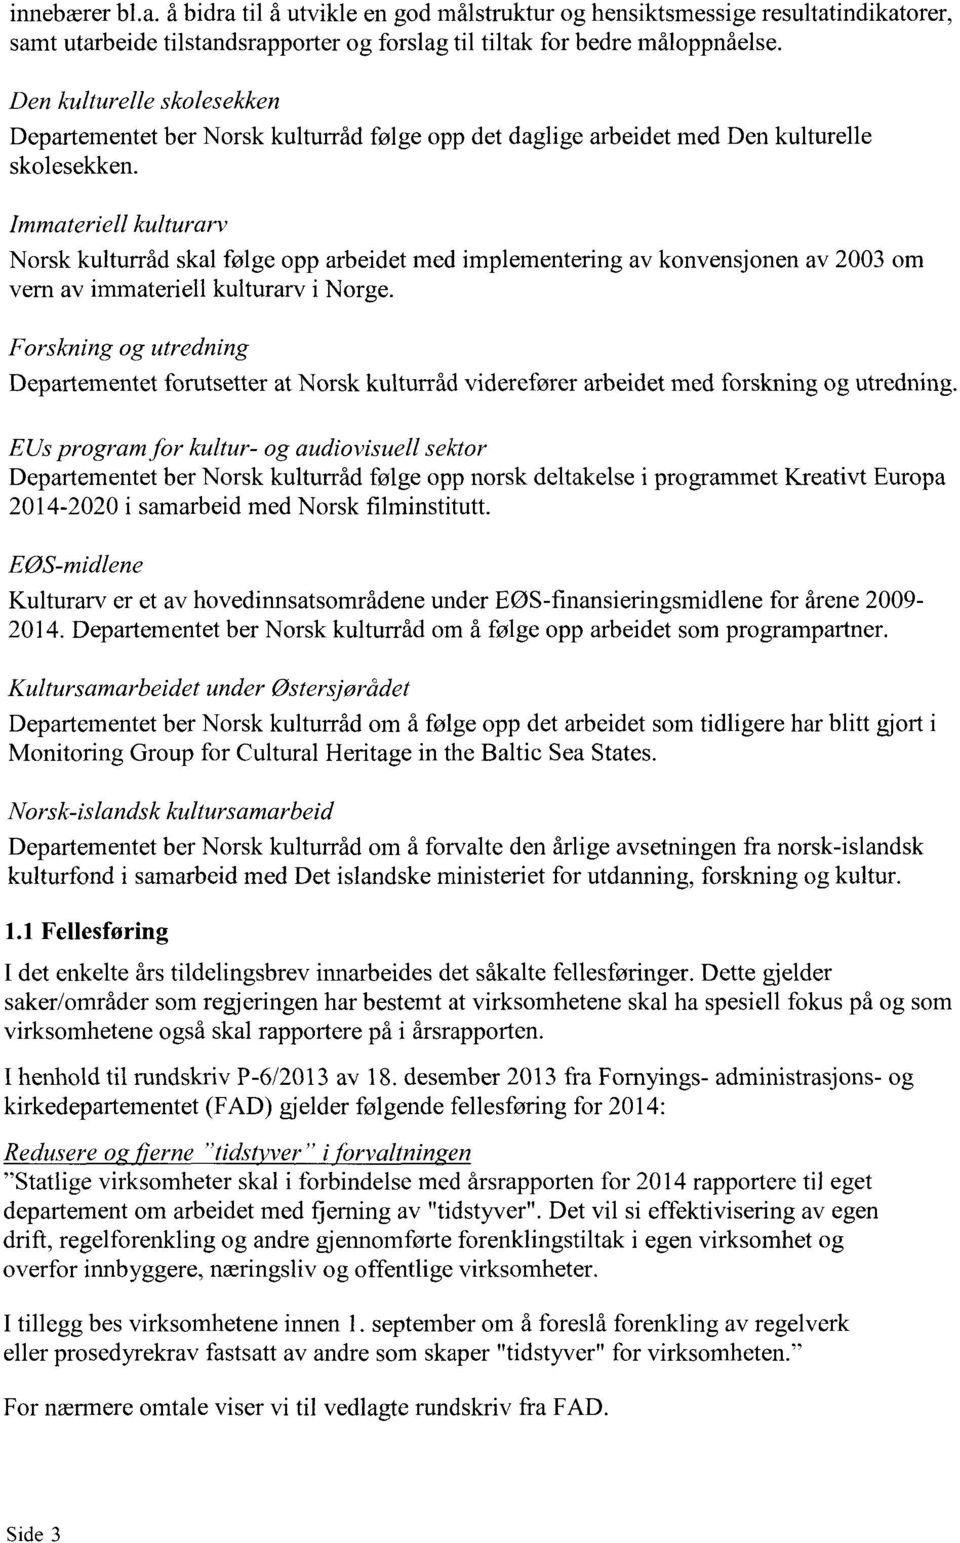 Immateriell kulturarv Norsk kulturråd skal følge opp arbeidet med implementering av konvensjonen av 2003 om vern av immateriell kulturarv i Norge.